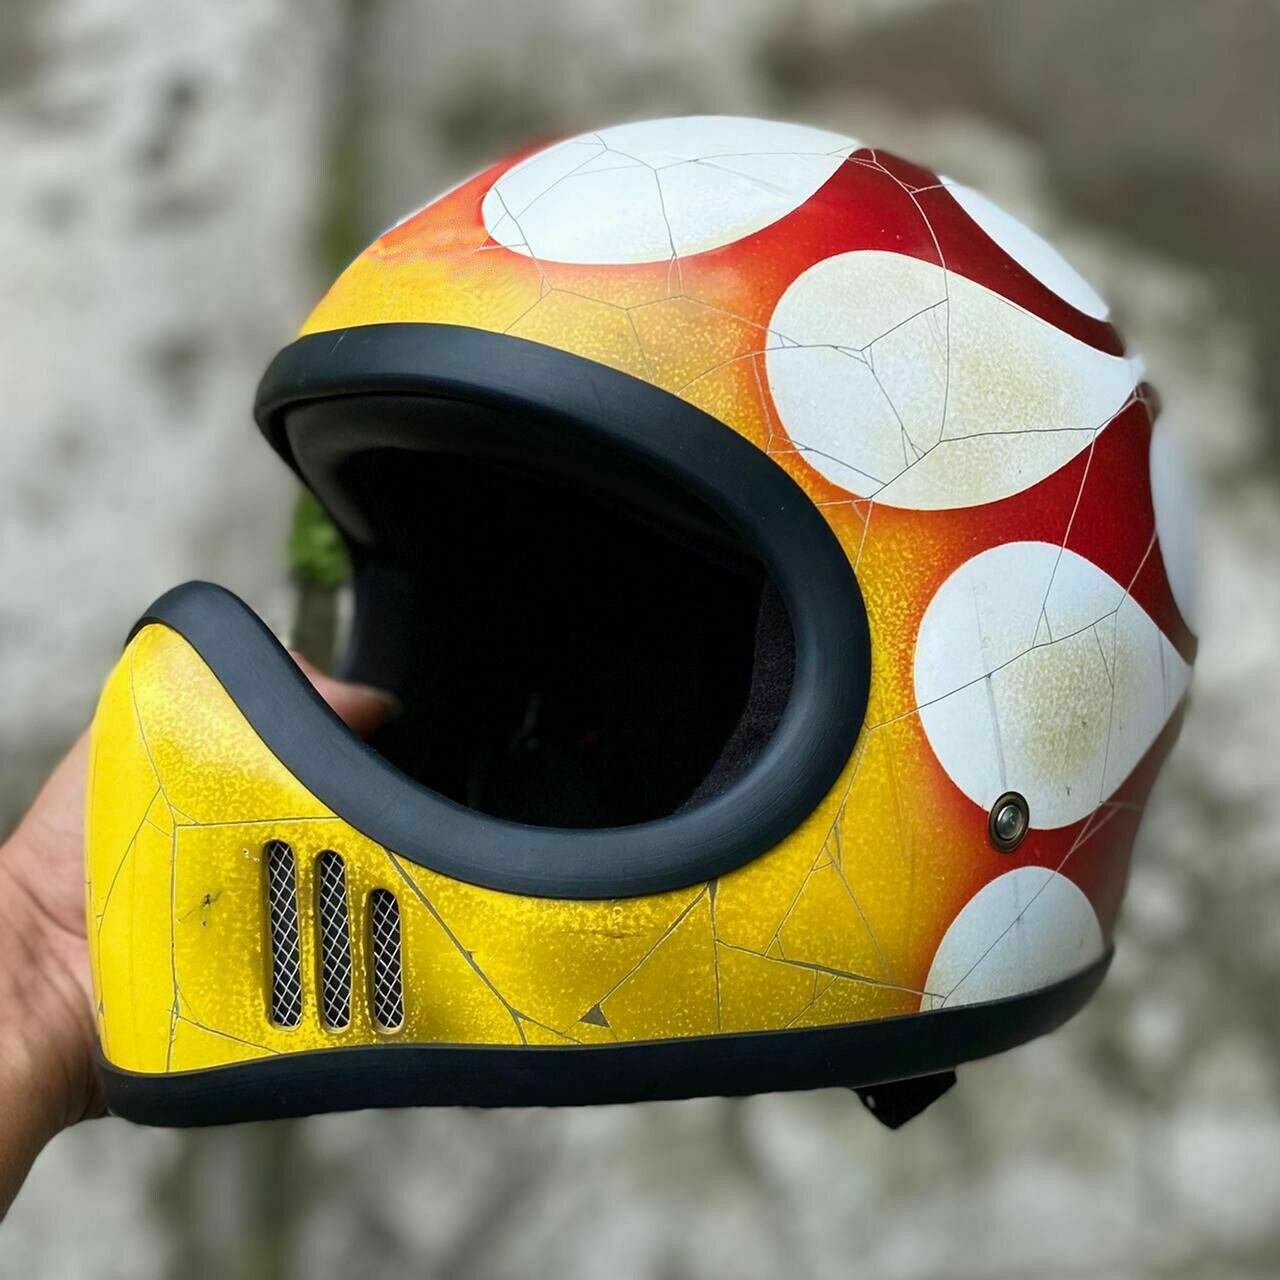 Blade Runner Motorcycle Helmet